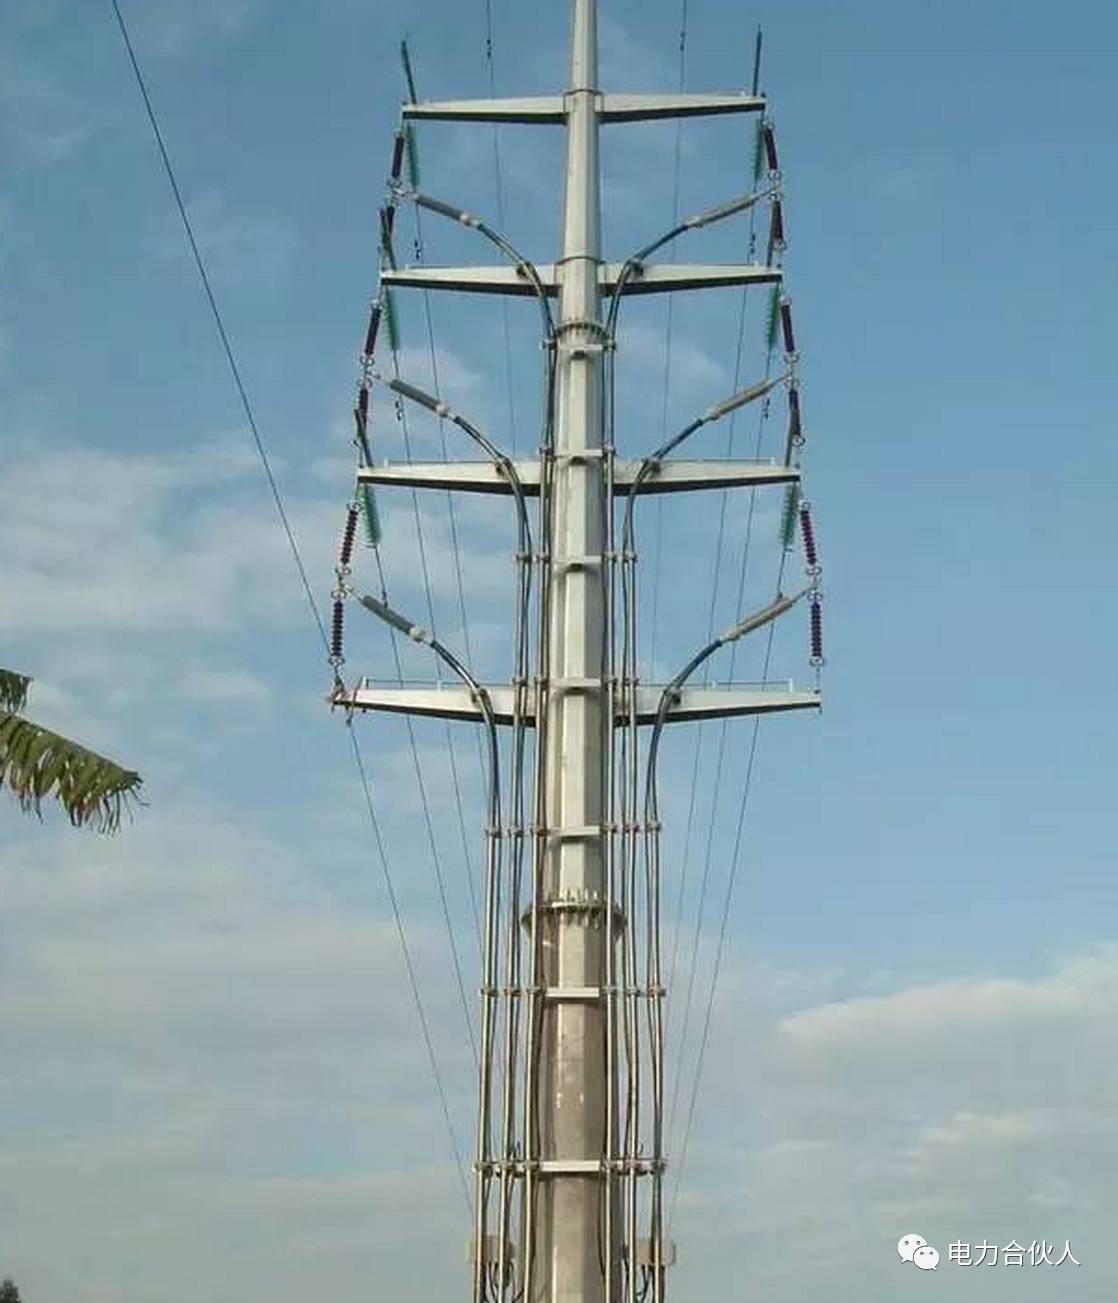 输电线路各种电缆终端杆塔你能分清楚吗